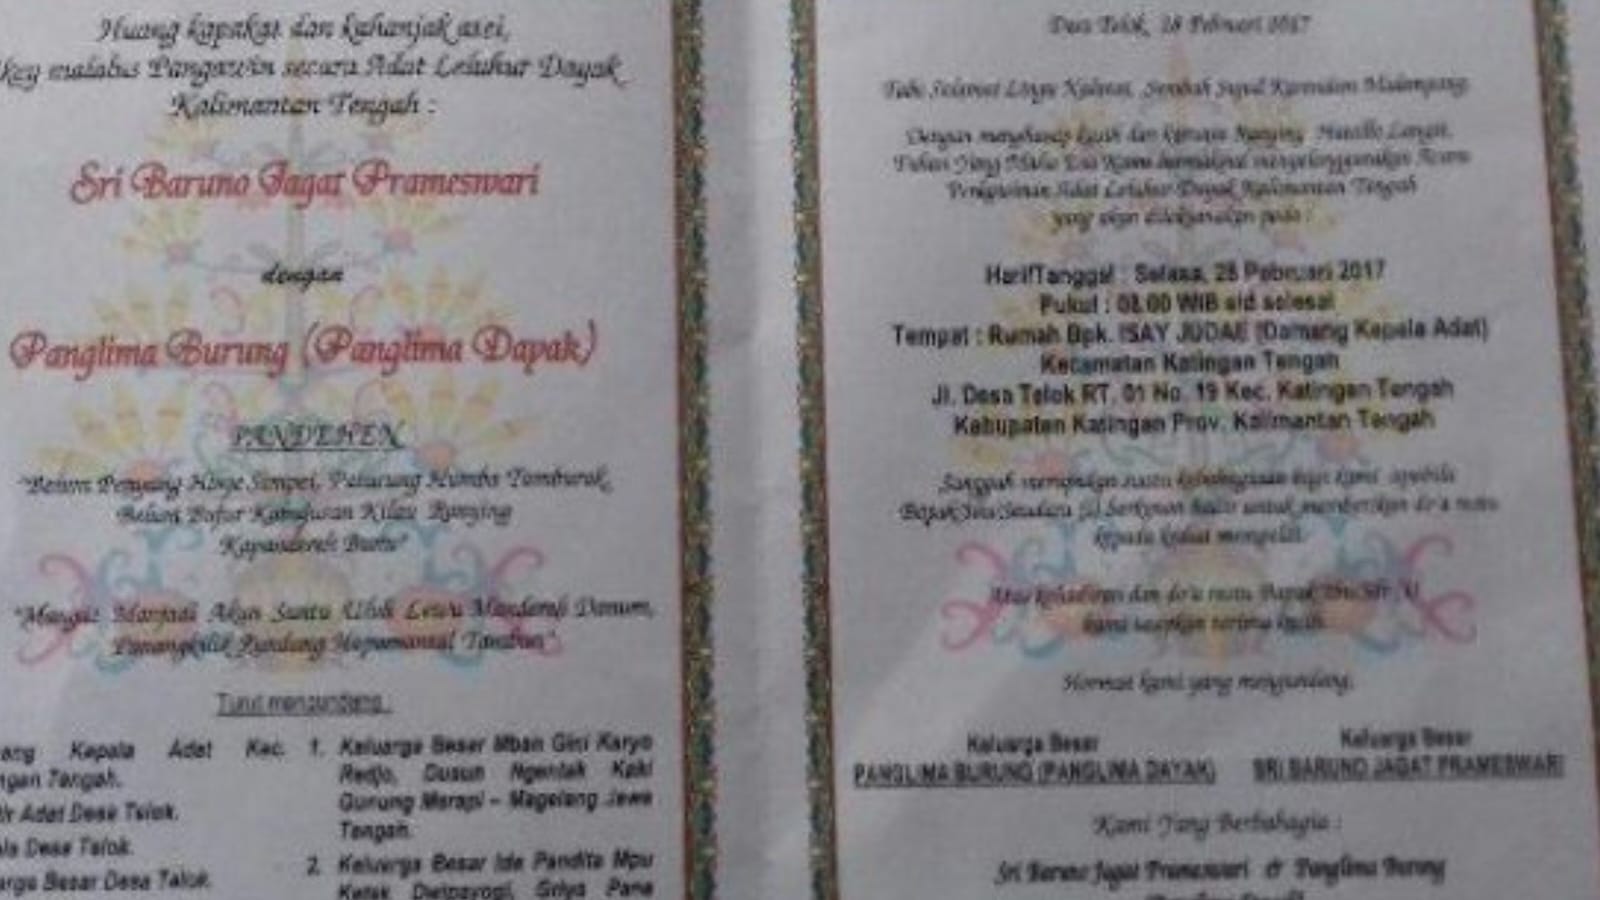 Heboh! Pernikahan Gaib Mengundang Presiden Jokowi dan Pejabat Negara